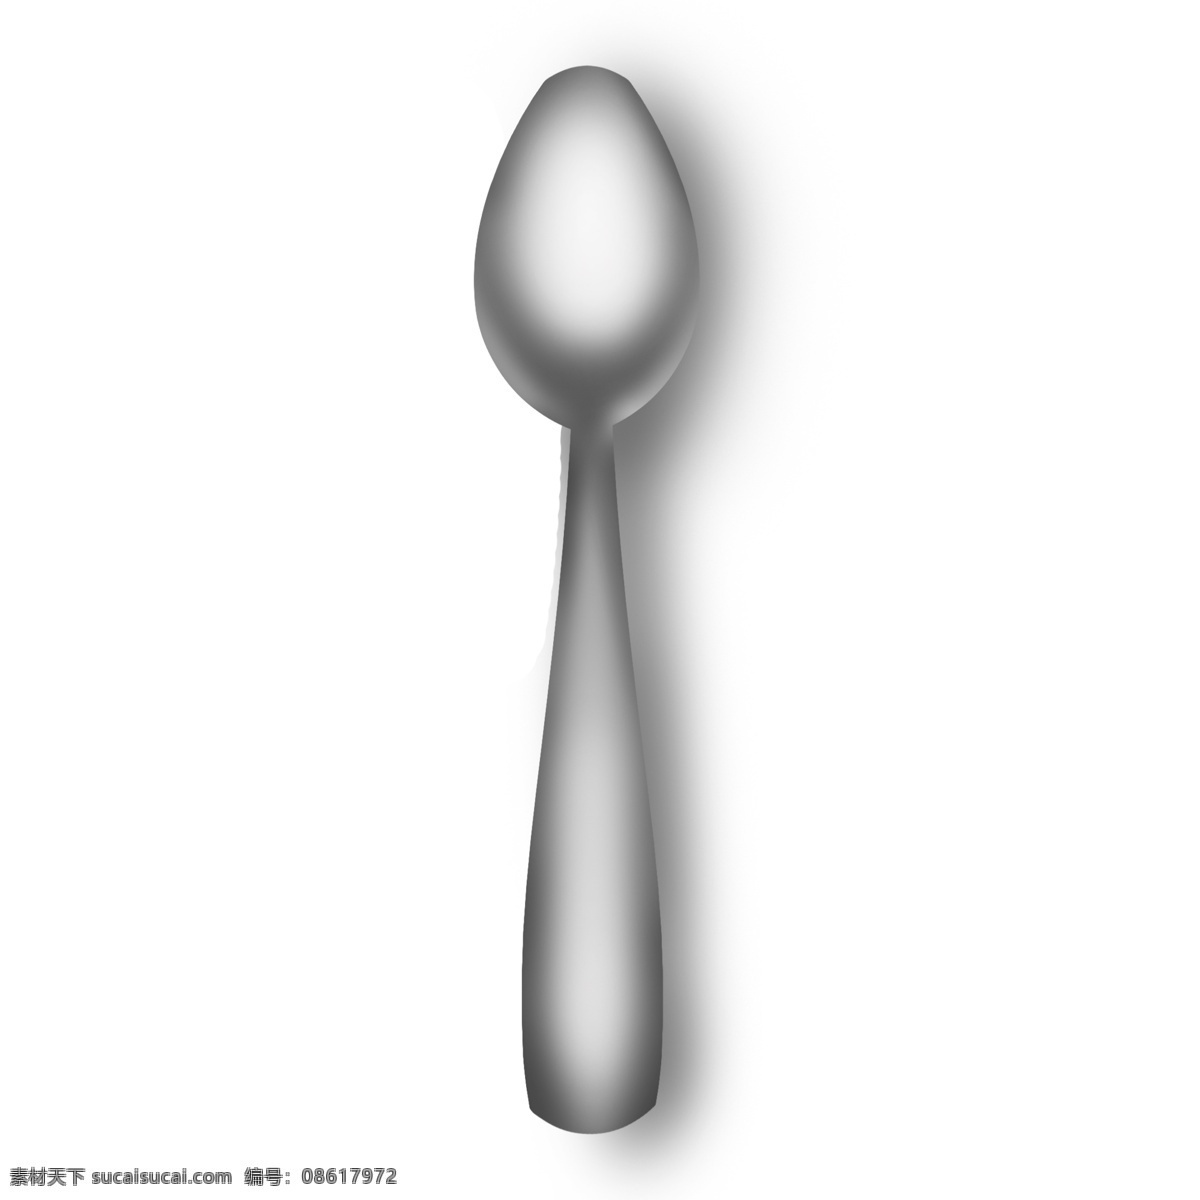 立体 仿真 灰白色 勺子 汤勺 写实 立体感 手绘 容器 工具 灰色 曲线 金属质感 银子